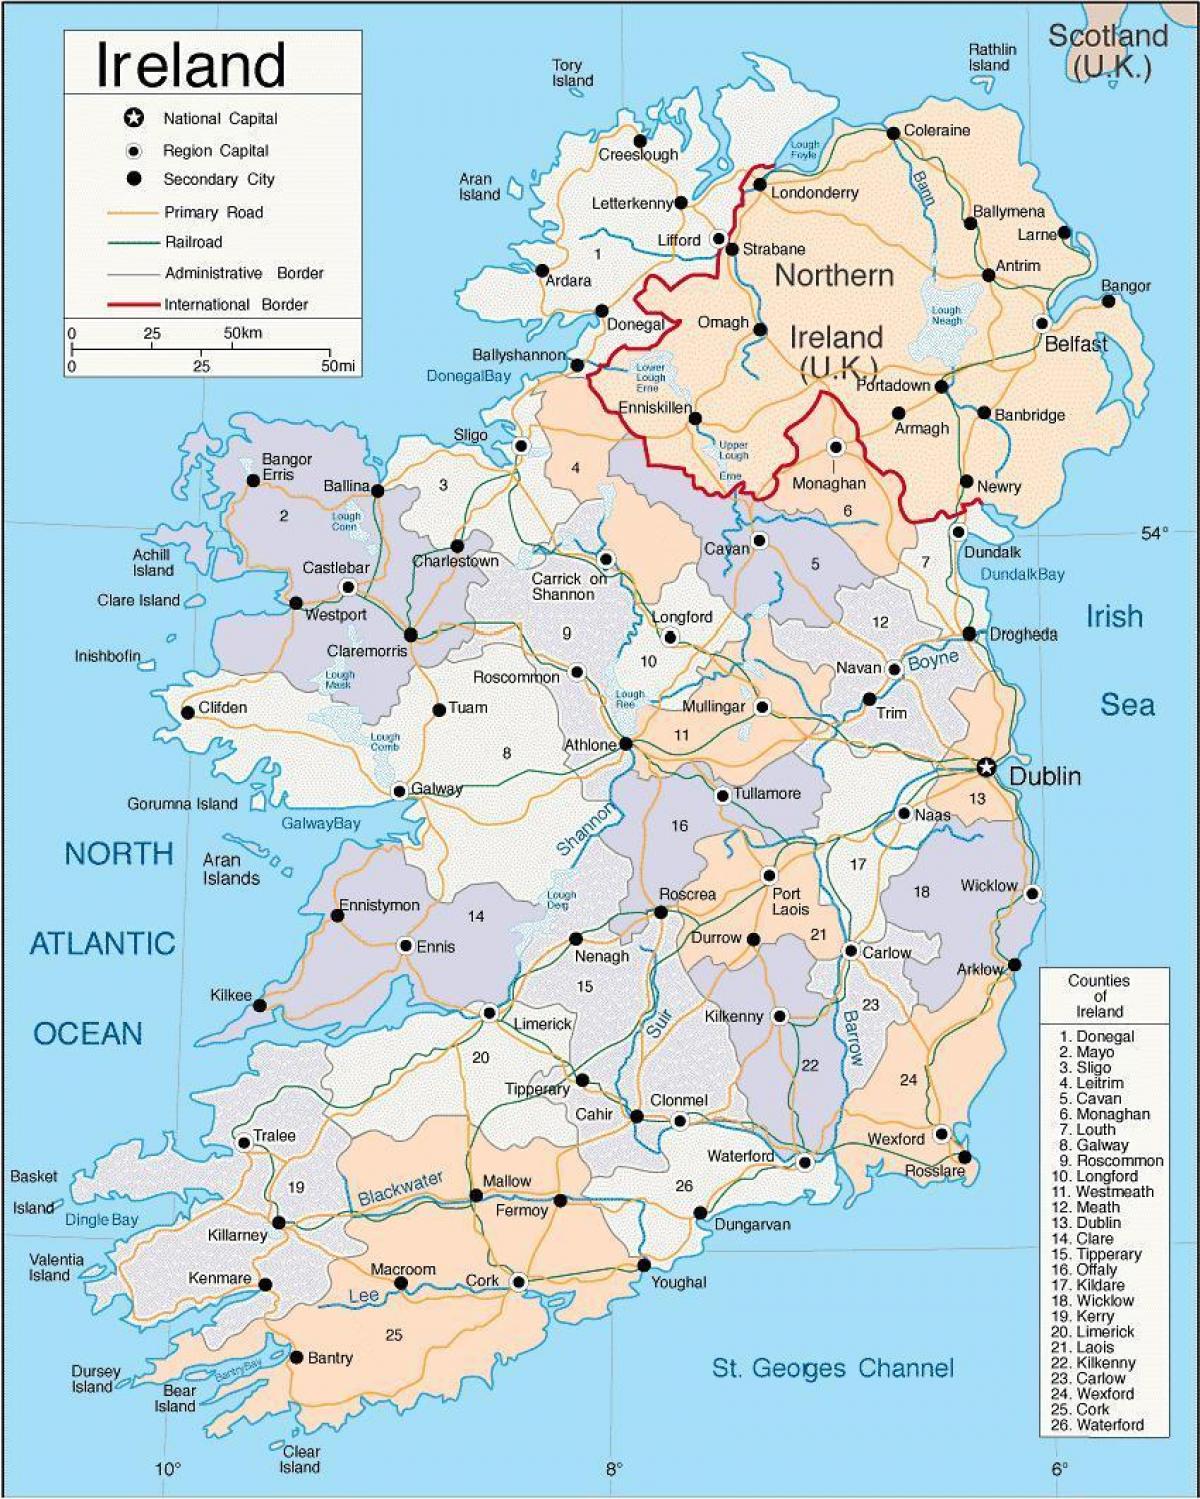 แผนที่ของไอร์แลนด์มันแตกต่างกันยังแสดงเมือง